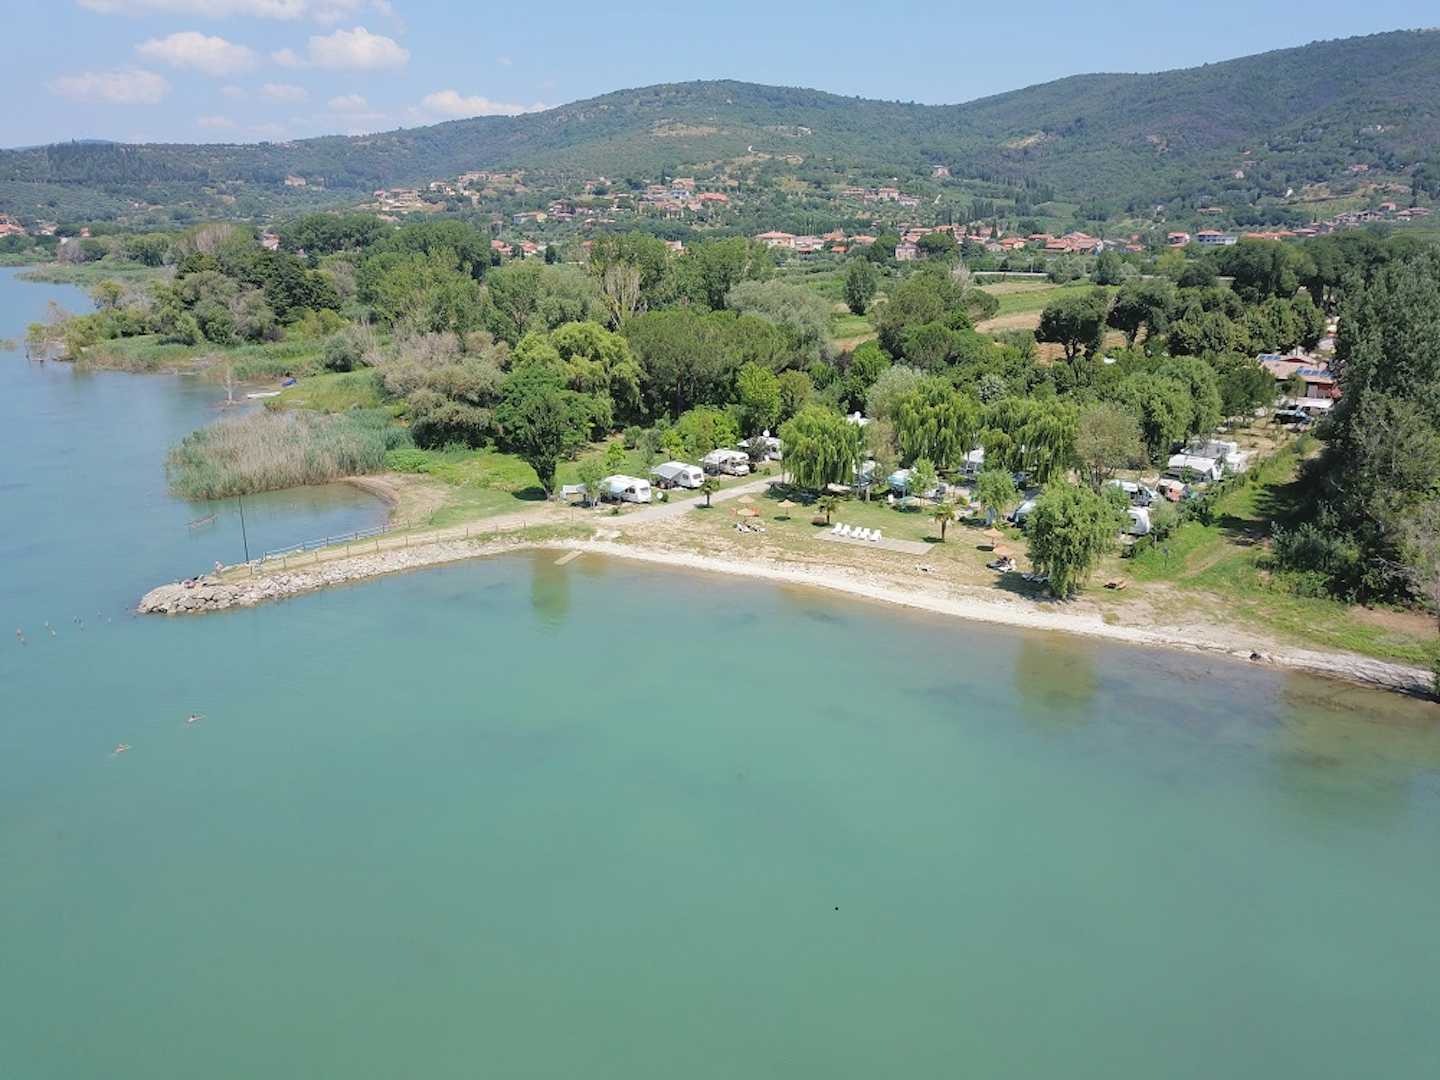 Camping Trasimeno - Übersicht auf das gesamte Campingplatz Gelände  mit Blick auf den Trasimeno See